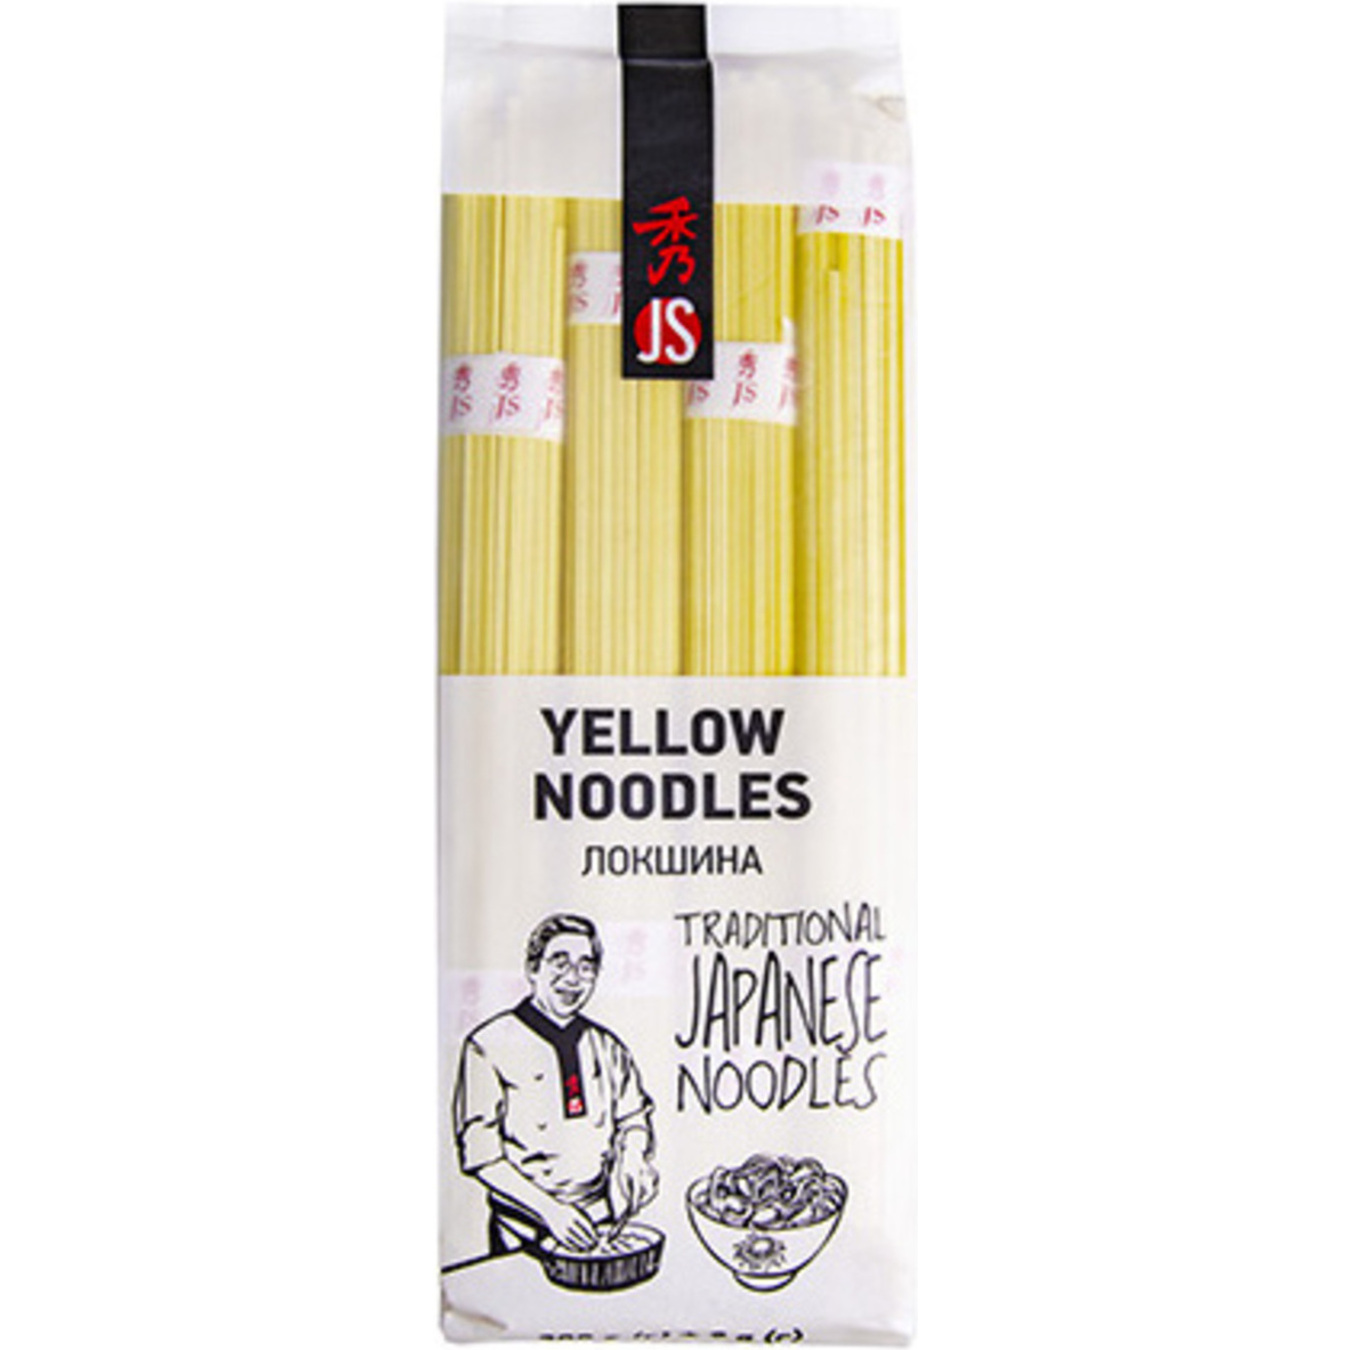 JS Yellow Noodles 300g